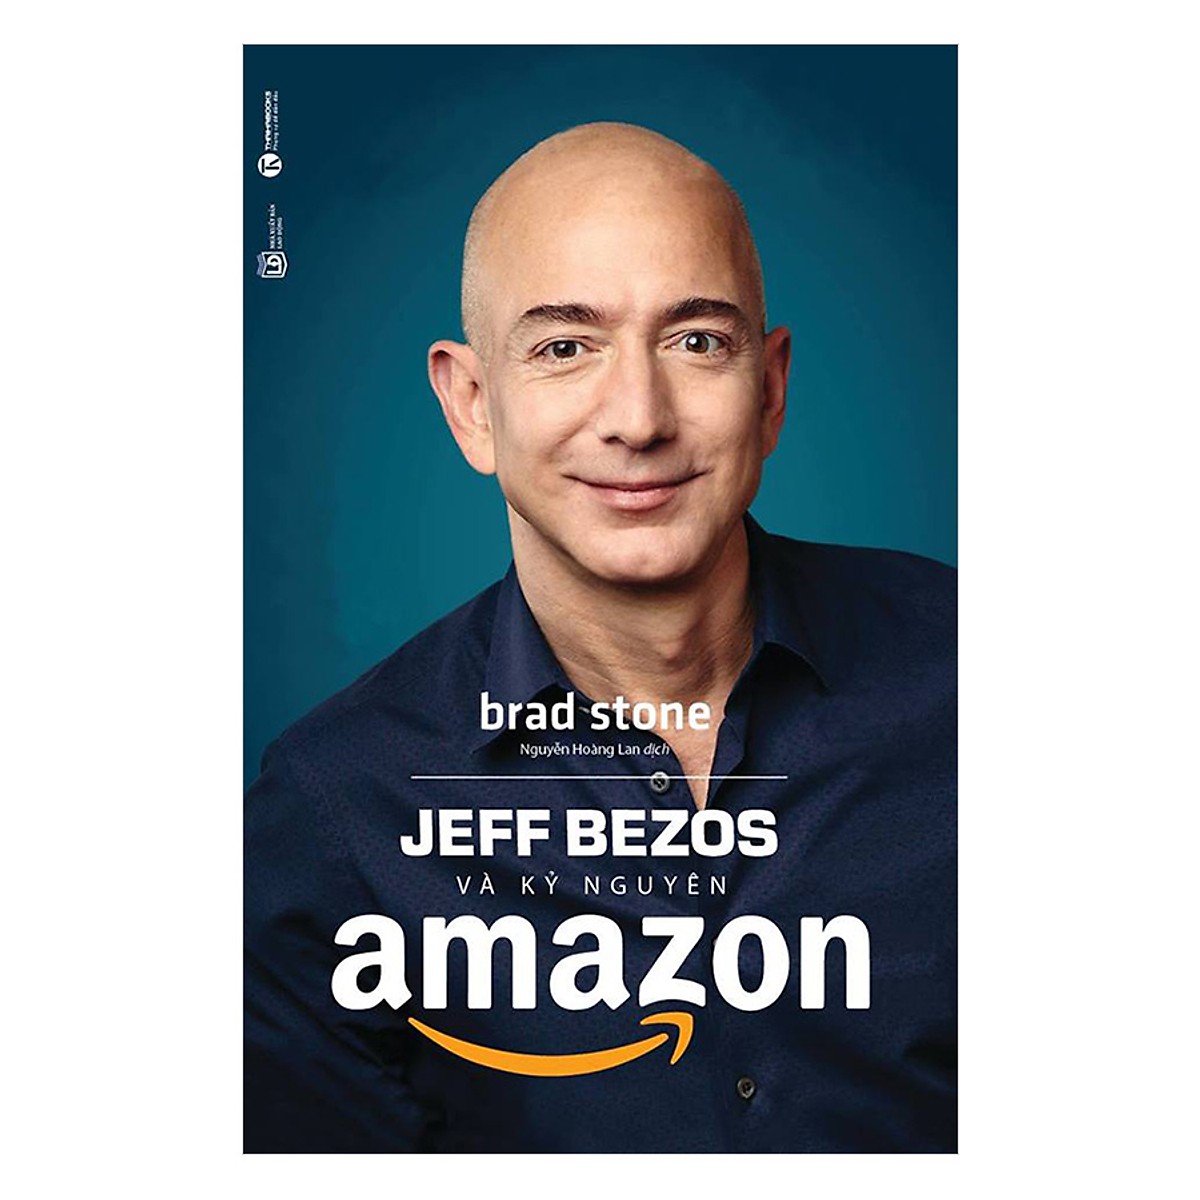 Combo 3 cuốn: Đế Chế Kỳ Lân: Uber, Airbnb Và Cuộc Chiến Tạo Lập Thung Lũng Silicon Mới + Jeff Bezos Và Kỷ Nguyên Amazon + Tesla Tương Lai Và Những Điều Viễn Tưởng